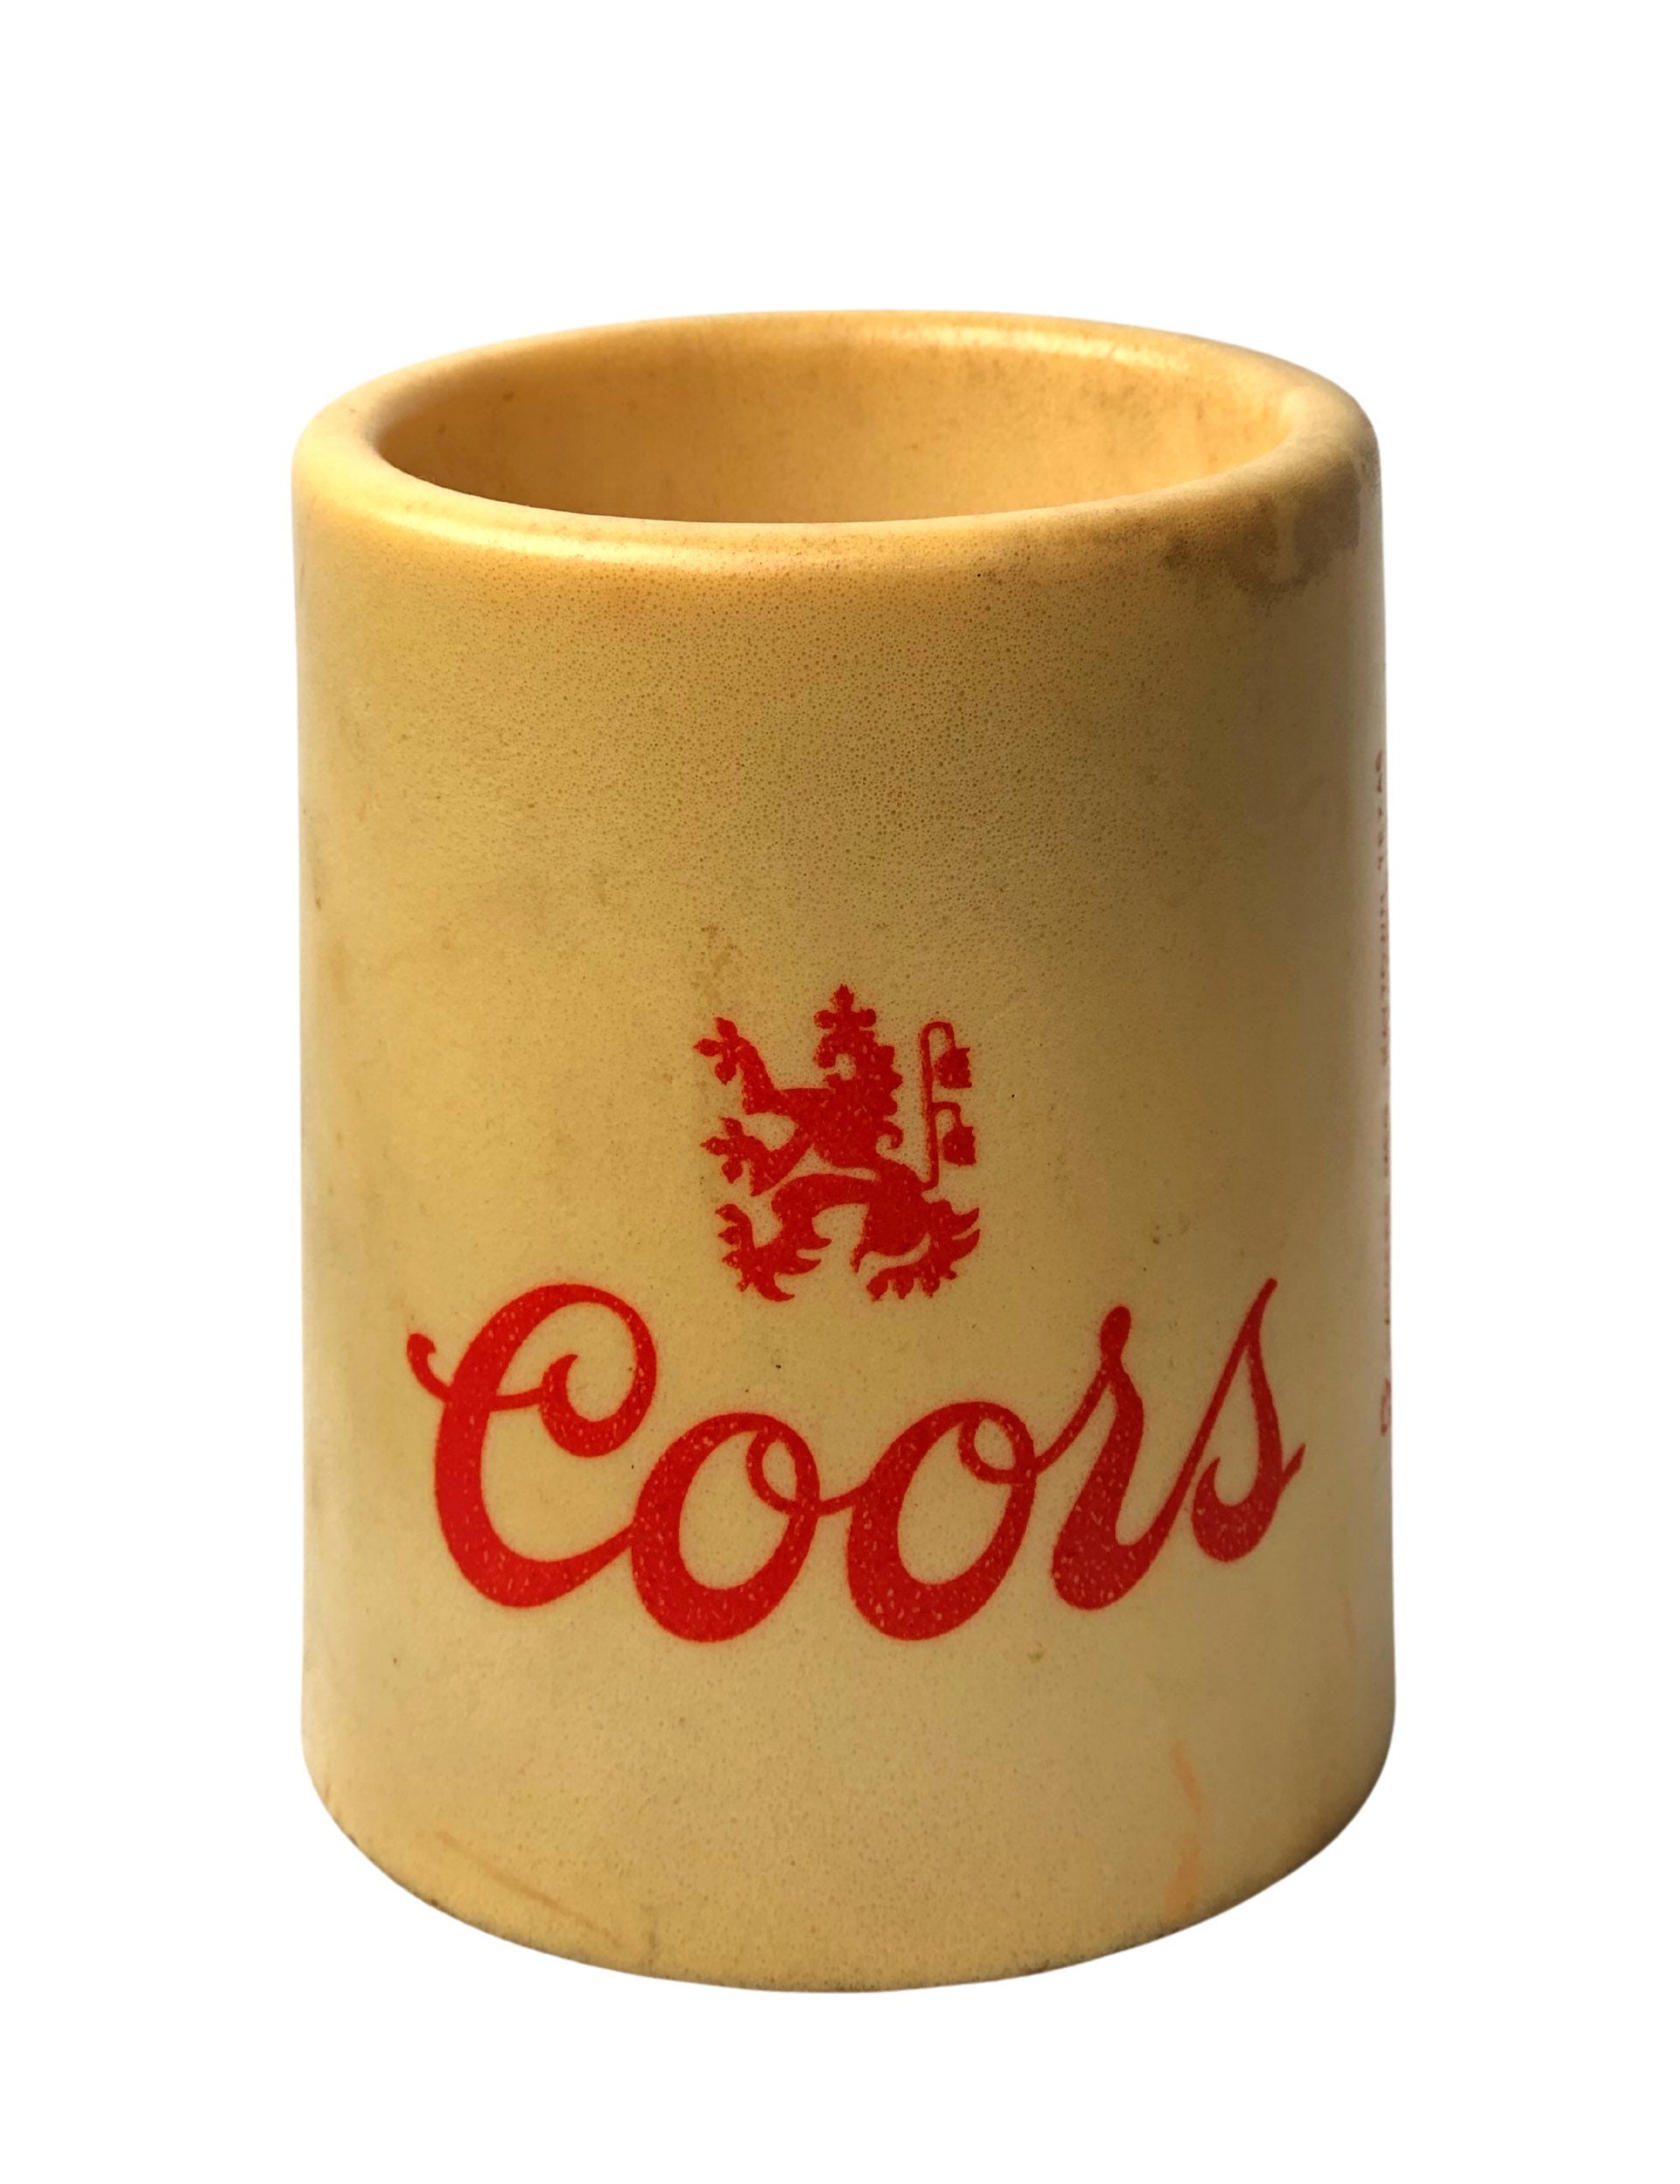 Coors Vintage Koozie